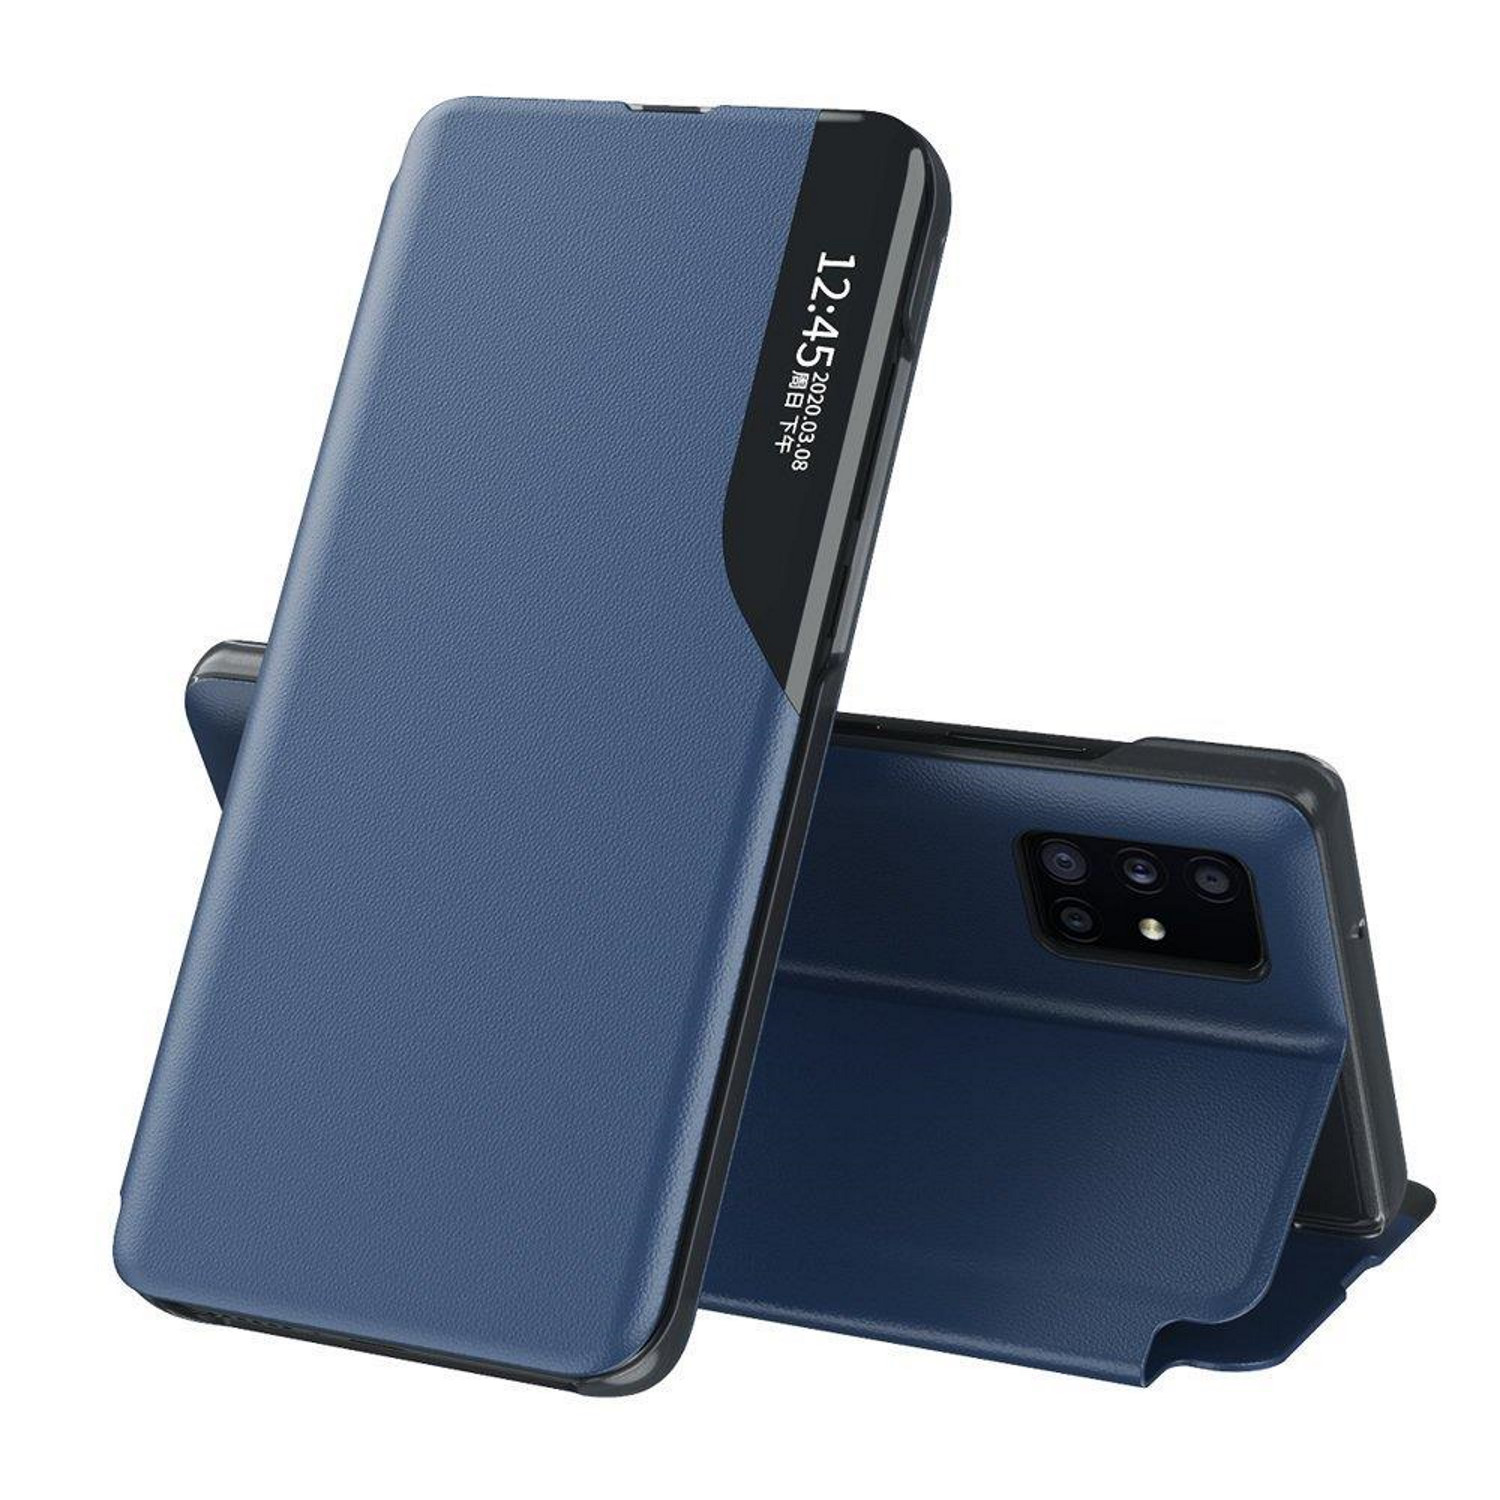 COFI Blau Smart Case, Bookcover, S20, Galaxy View Samsung,